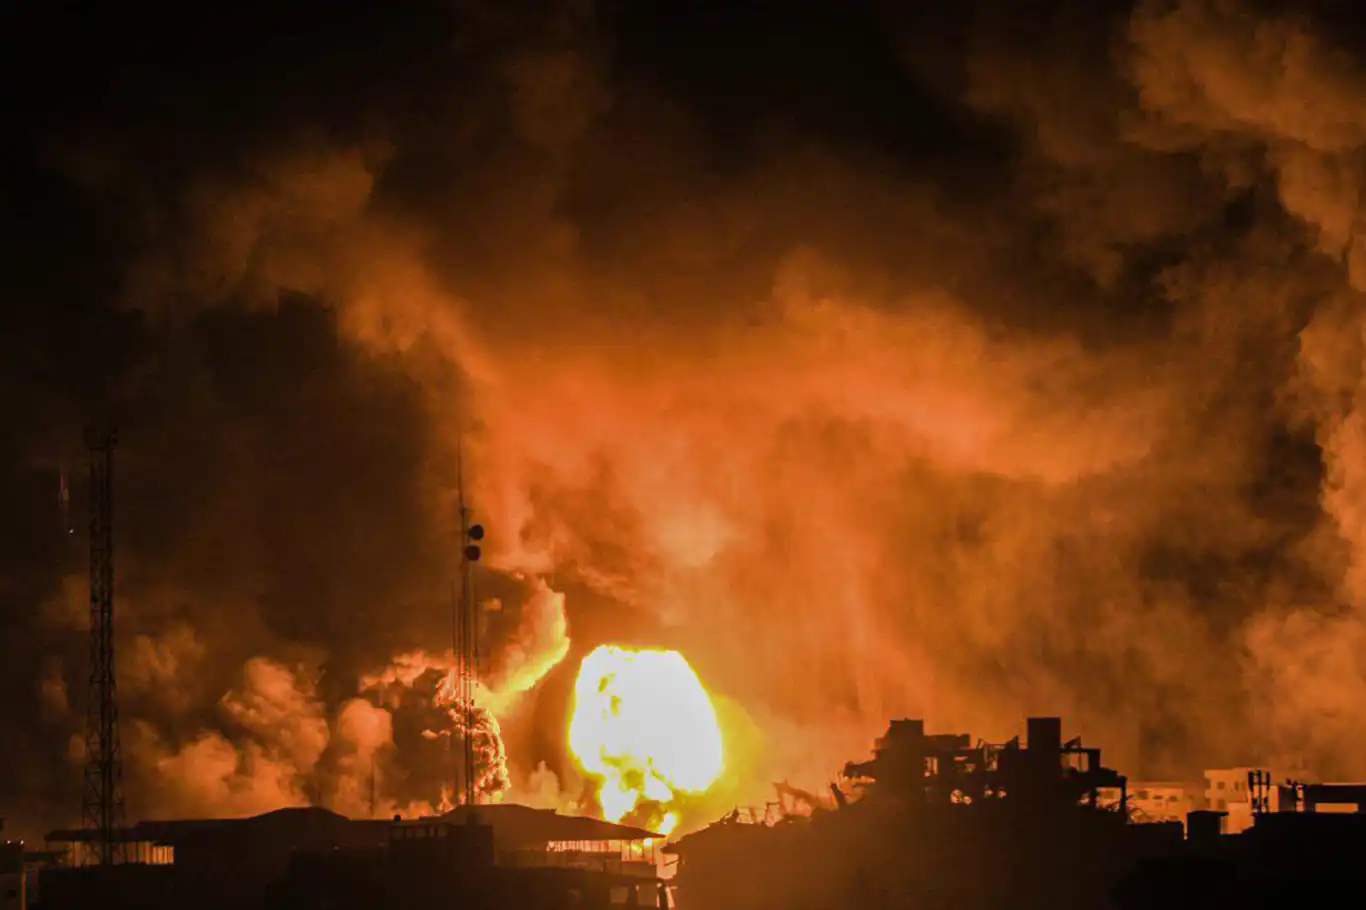 İşgalci rejim Gazze'yi vahşice bombalıyor: Çok sayıda şehit var, internet ve iletişim kesildi